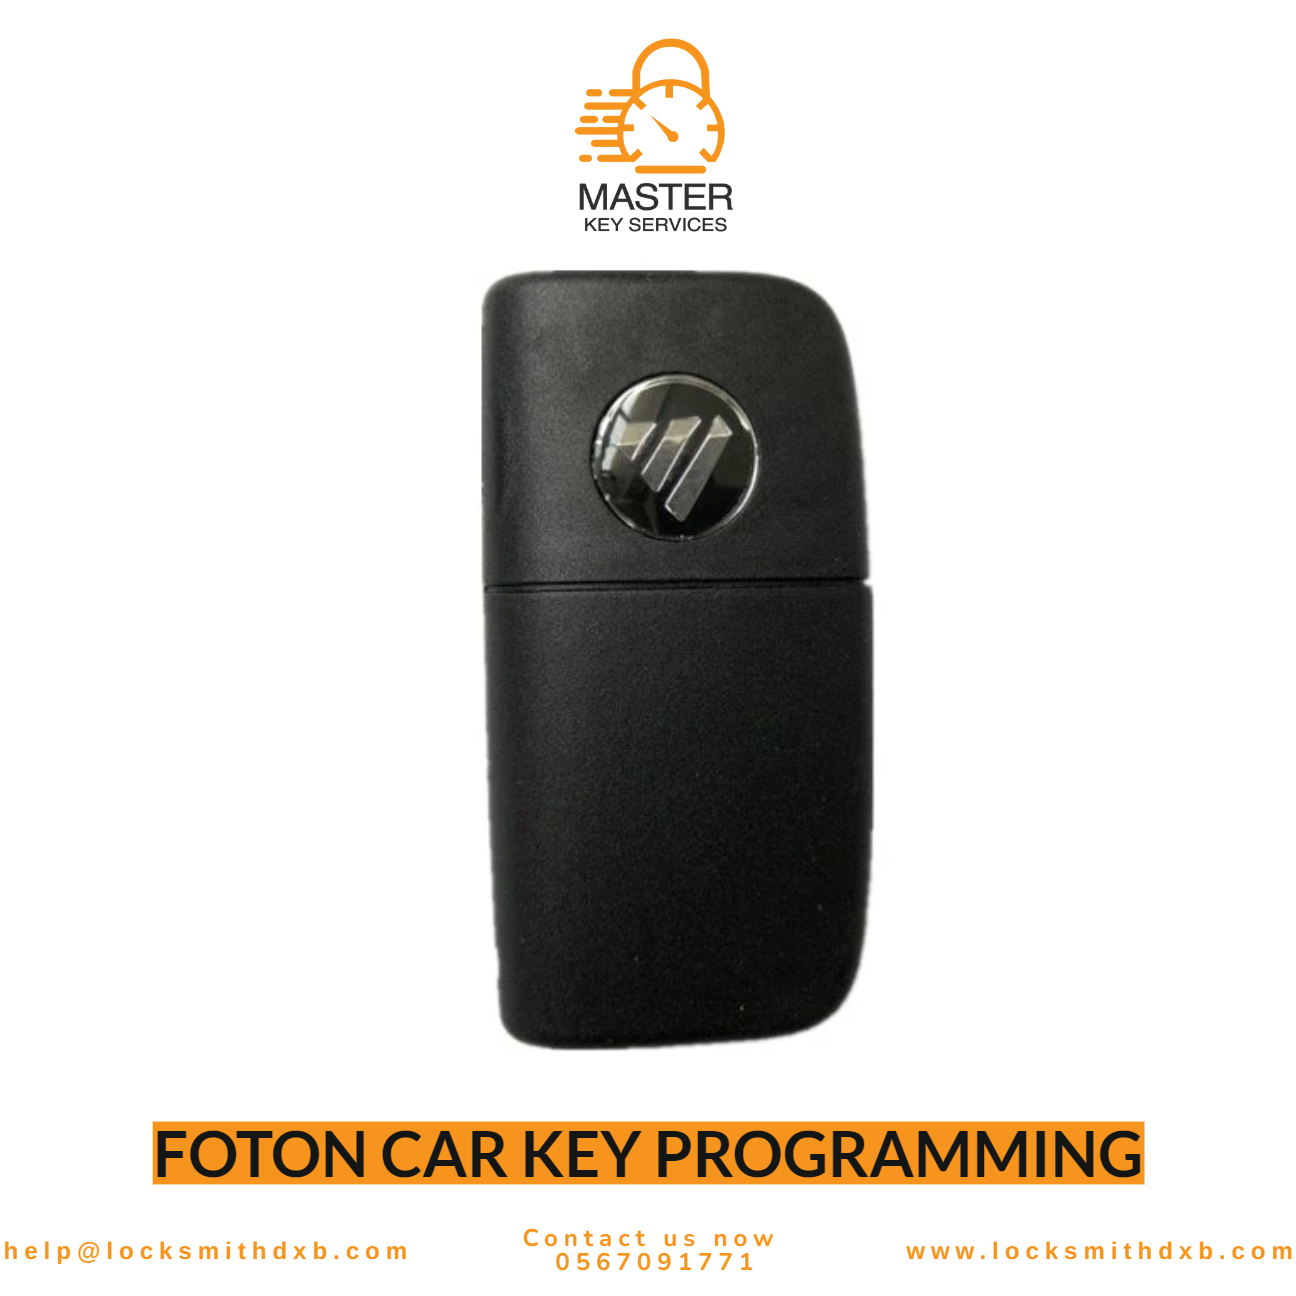 FOTON car key programming